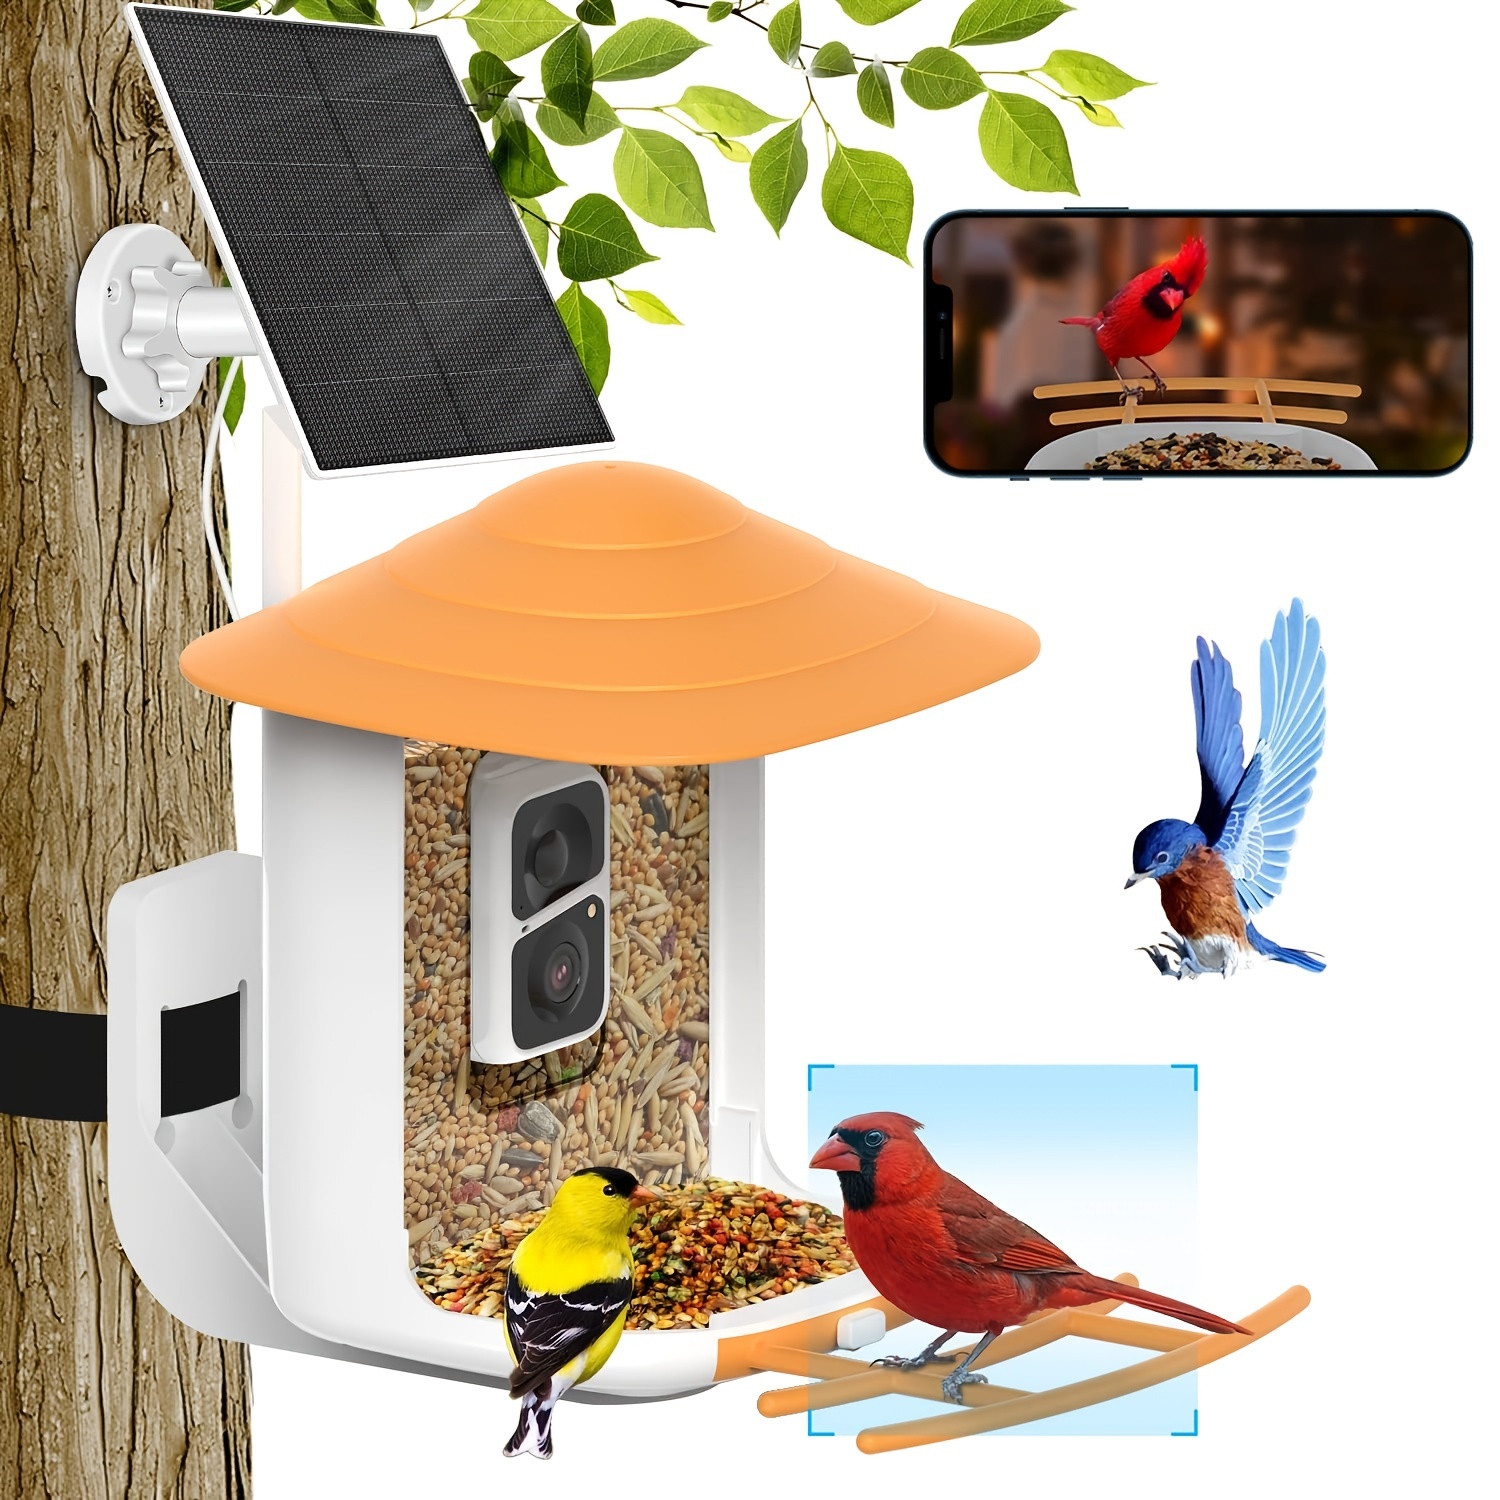 Mangeoire À Oiseaux 1 Pc Avec Caméra, Caméra Intelligente Pour Mangeoire À  Oiseaux Avec Identification Des Espèces D'oiseaux Par IA, Enregistrement